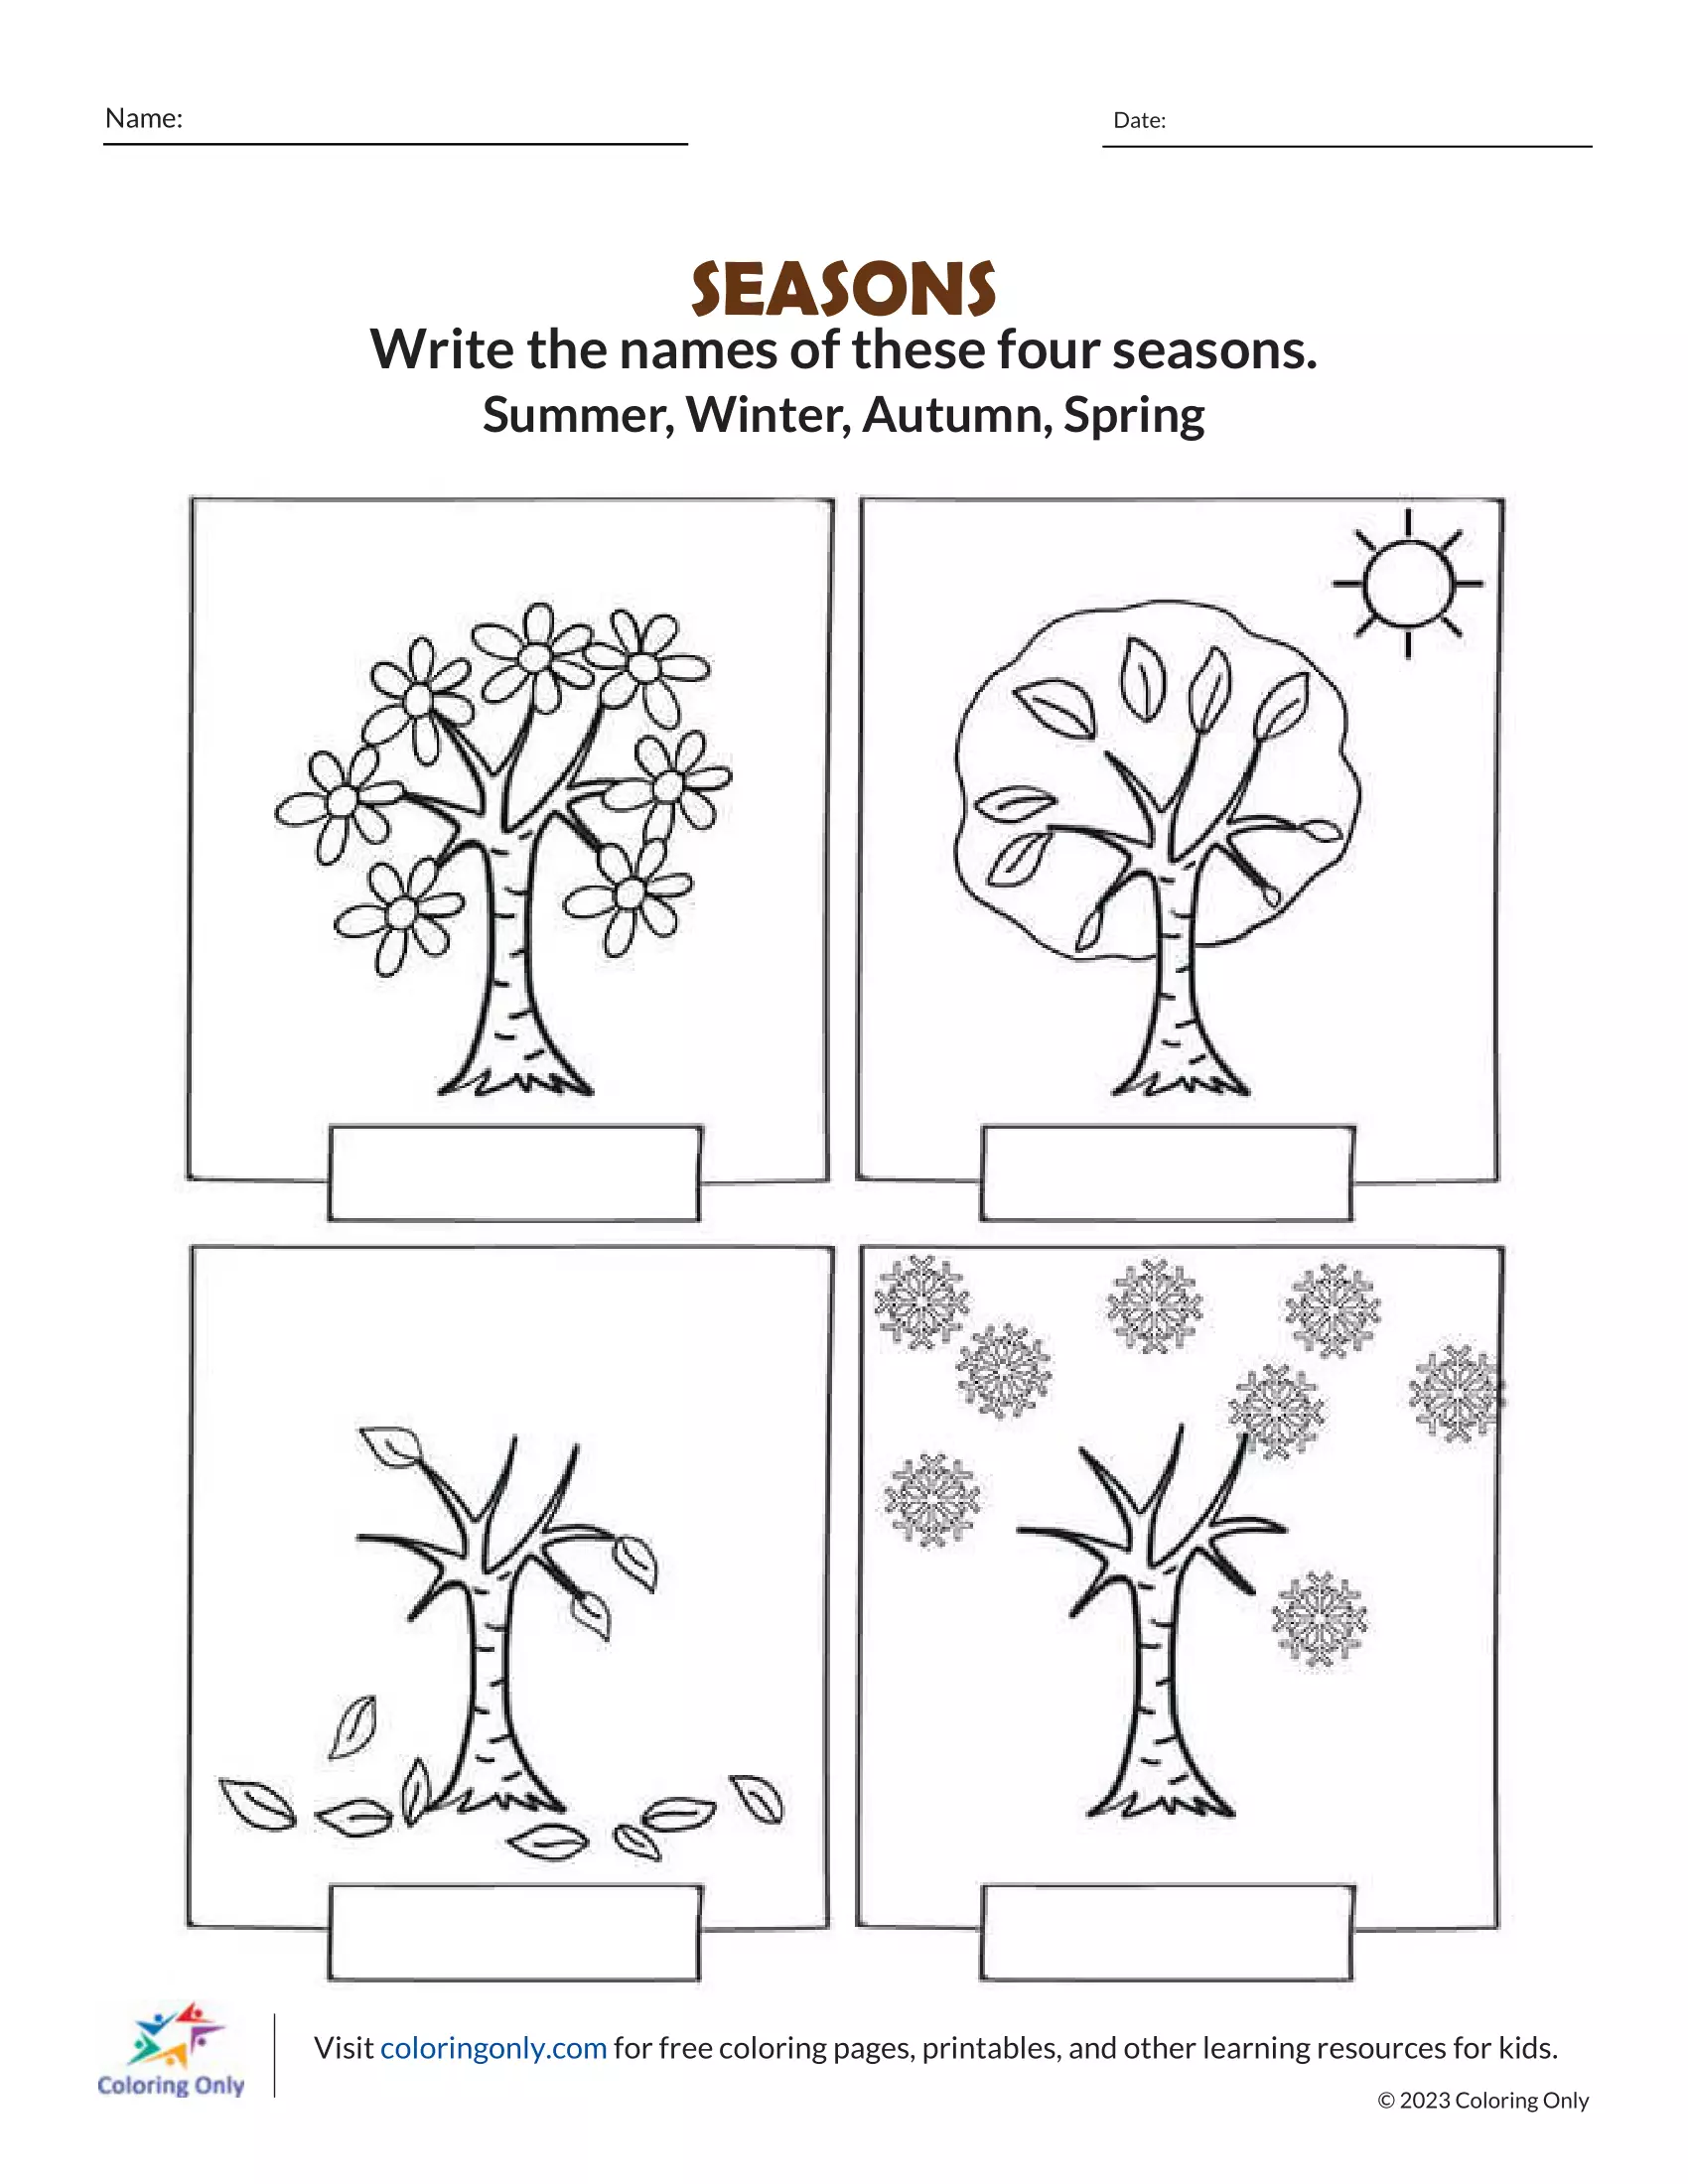 Jahreszeiten-Zyklus